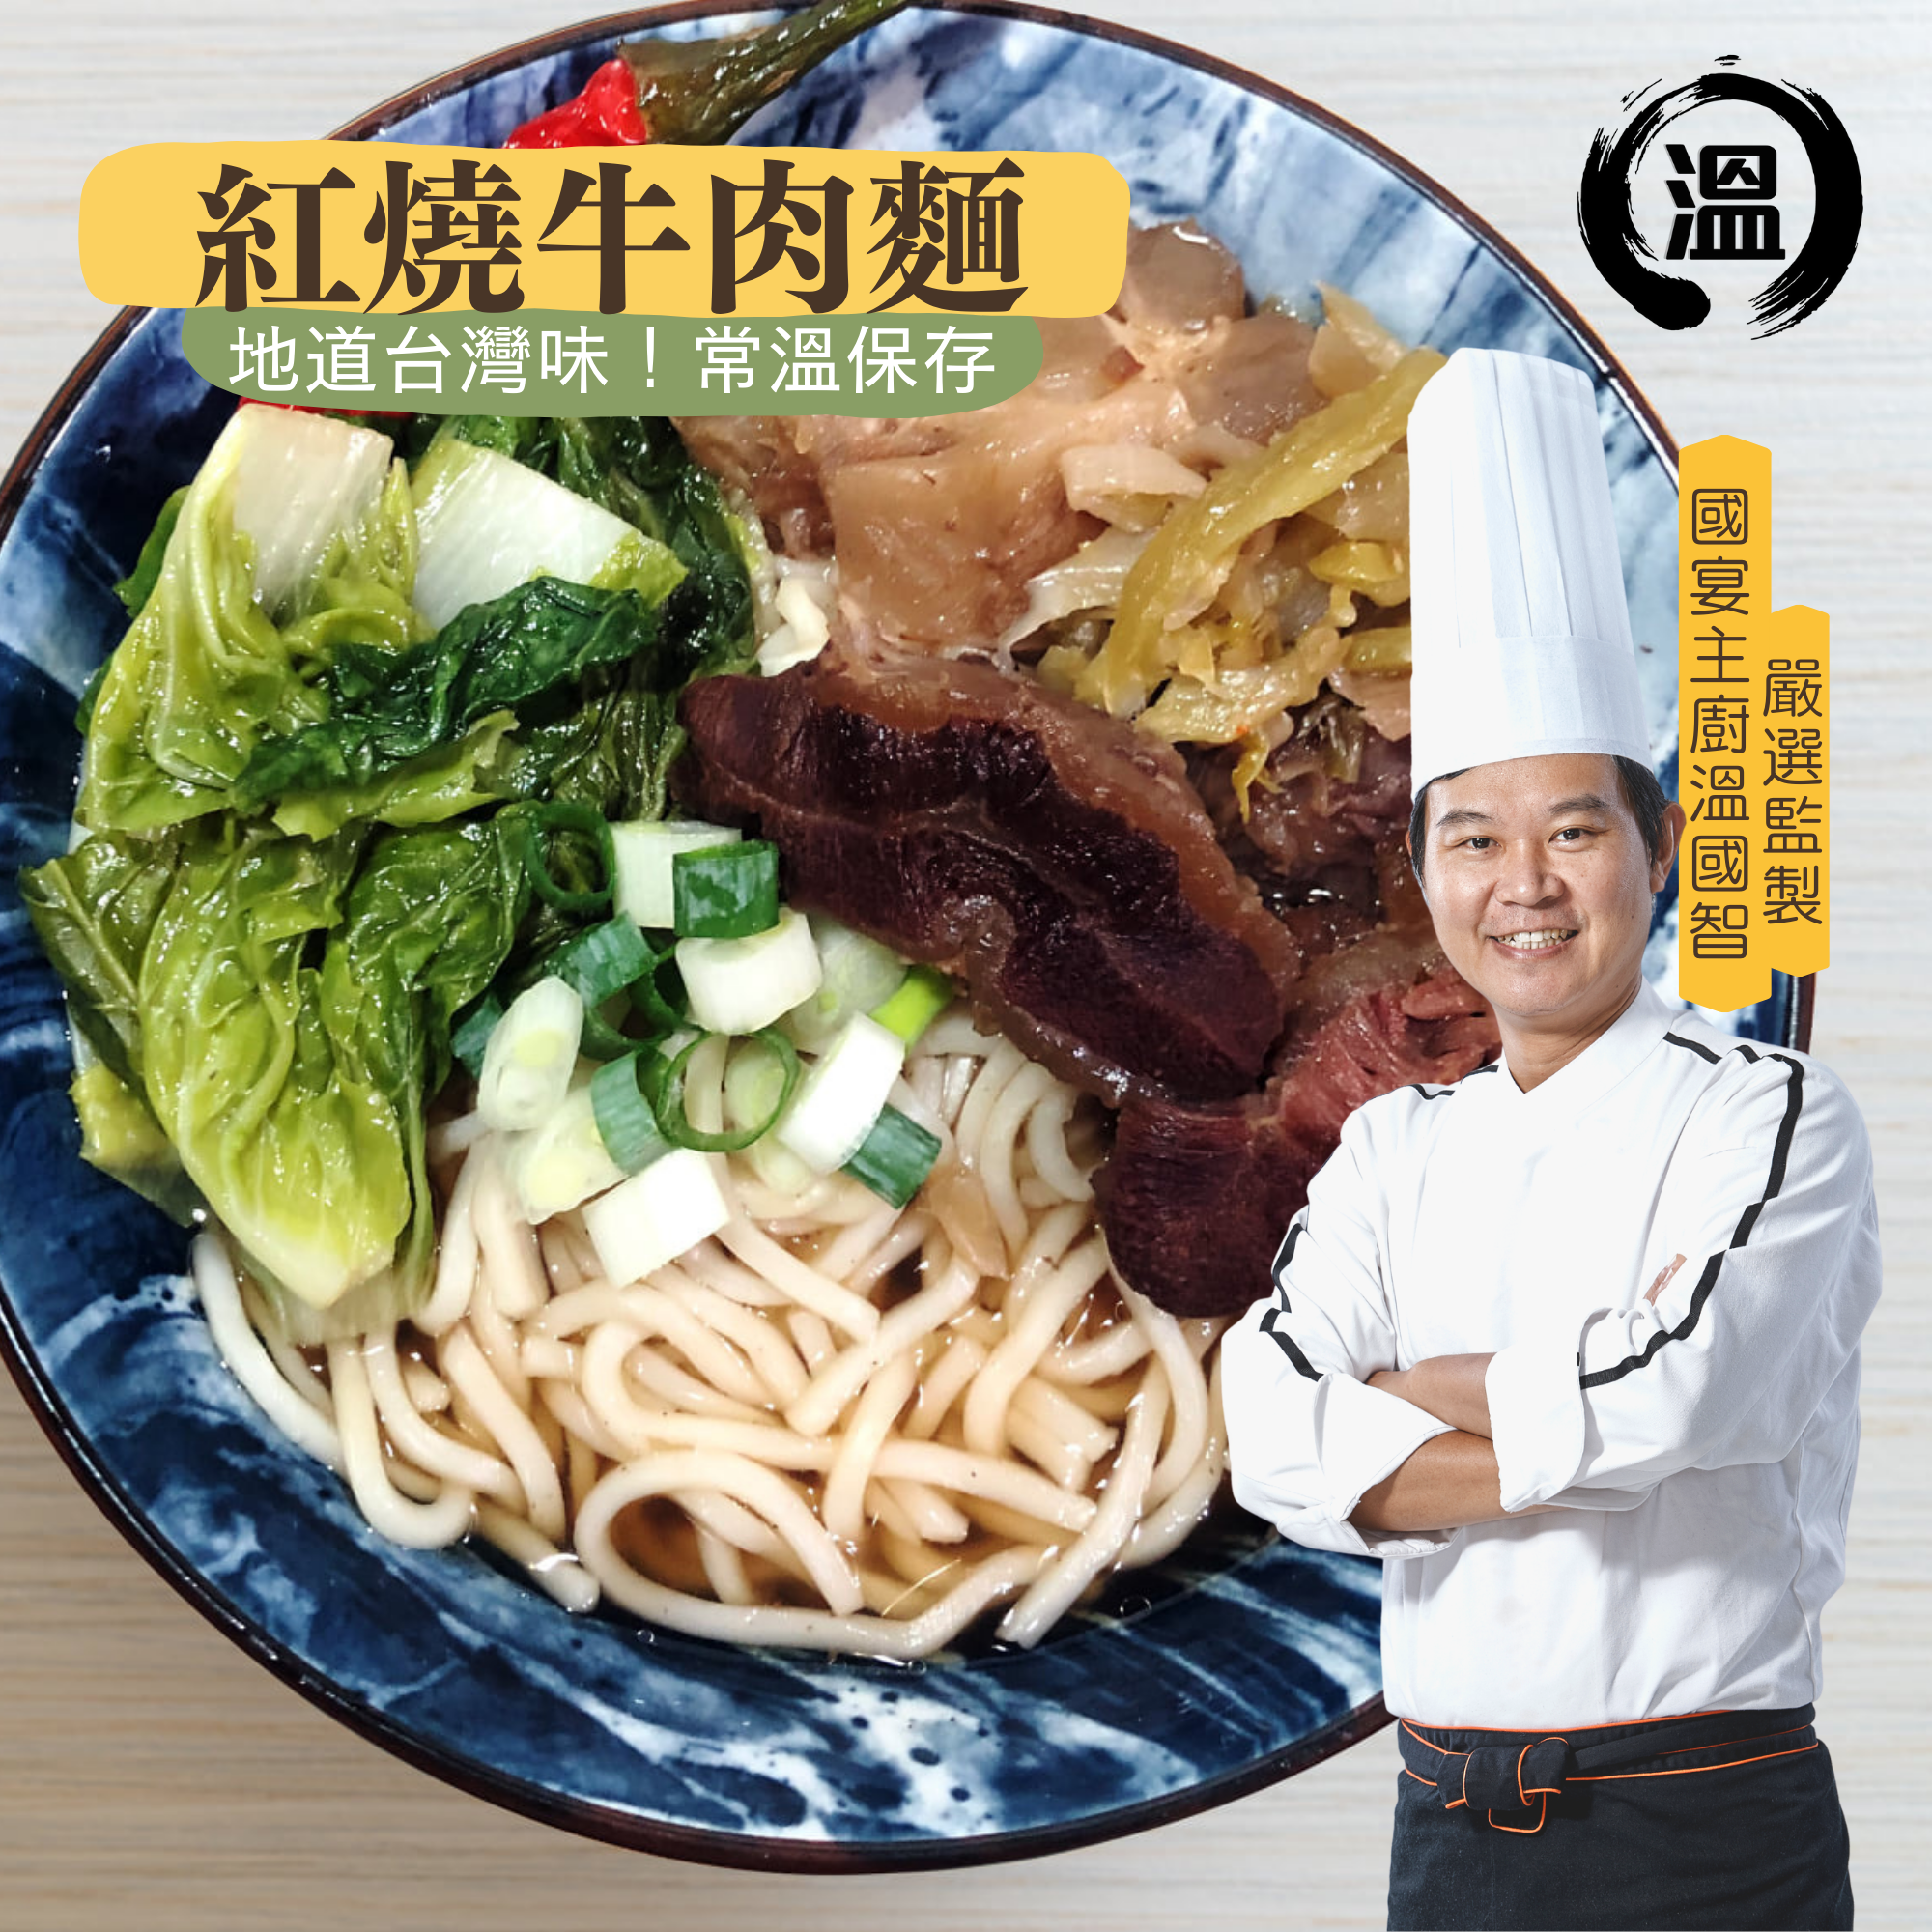 【溫國智】常溫保存-紅燒牛肉麵580g/份